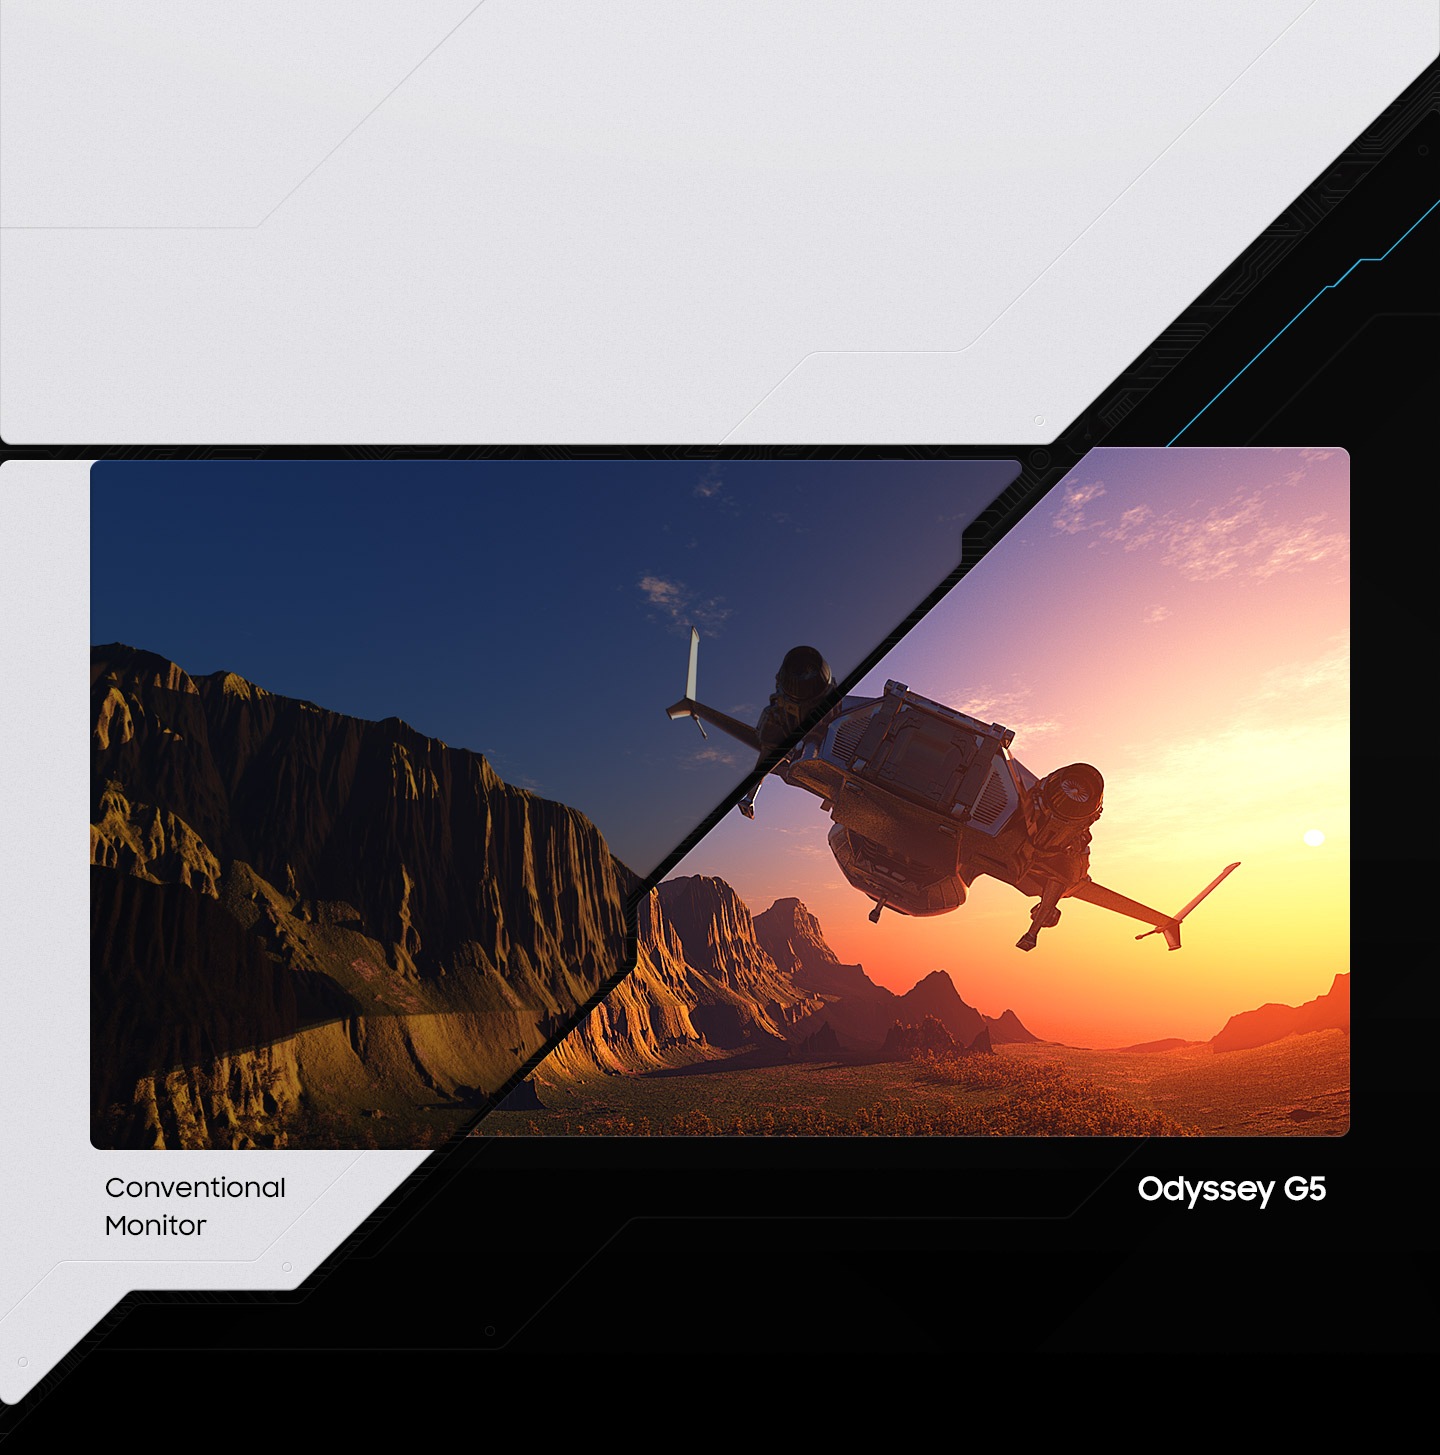 Màn hình Odyssey G5 nằm bên phải, có công nghệ HDR, hiển thị sáng hơn và nhiều sắc thái màu hơn so với màn hình thông thường.